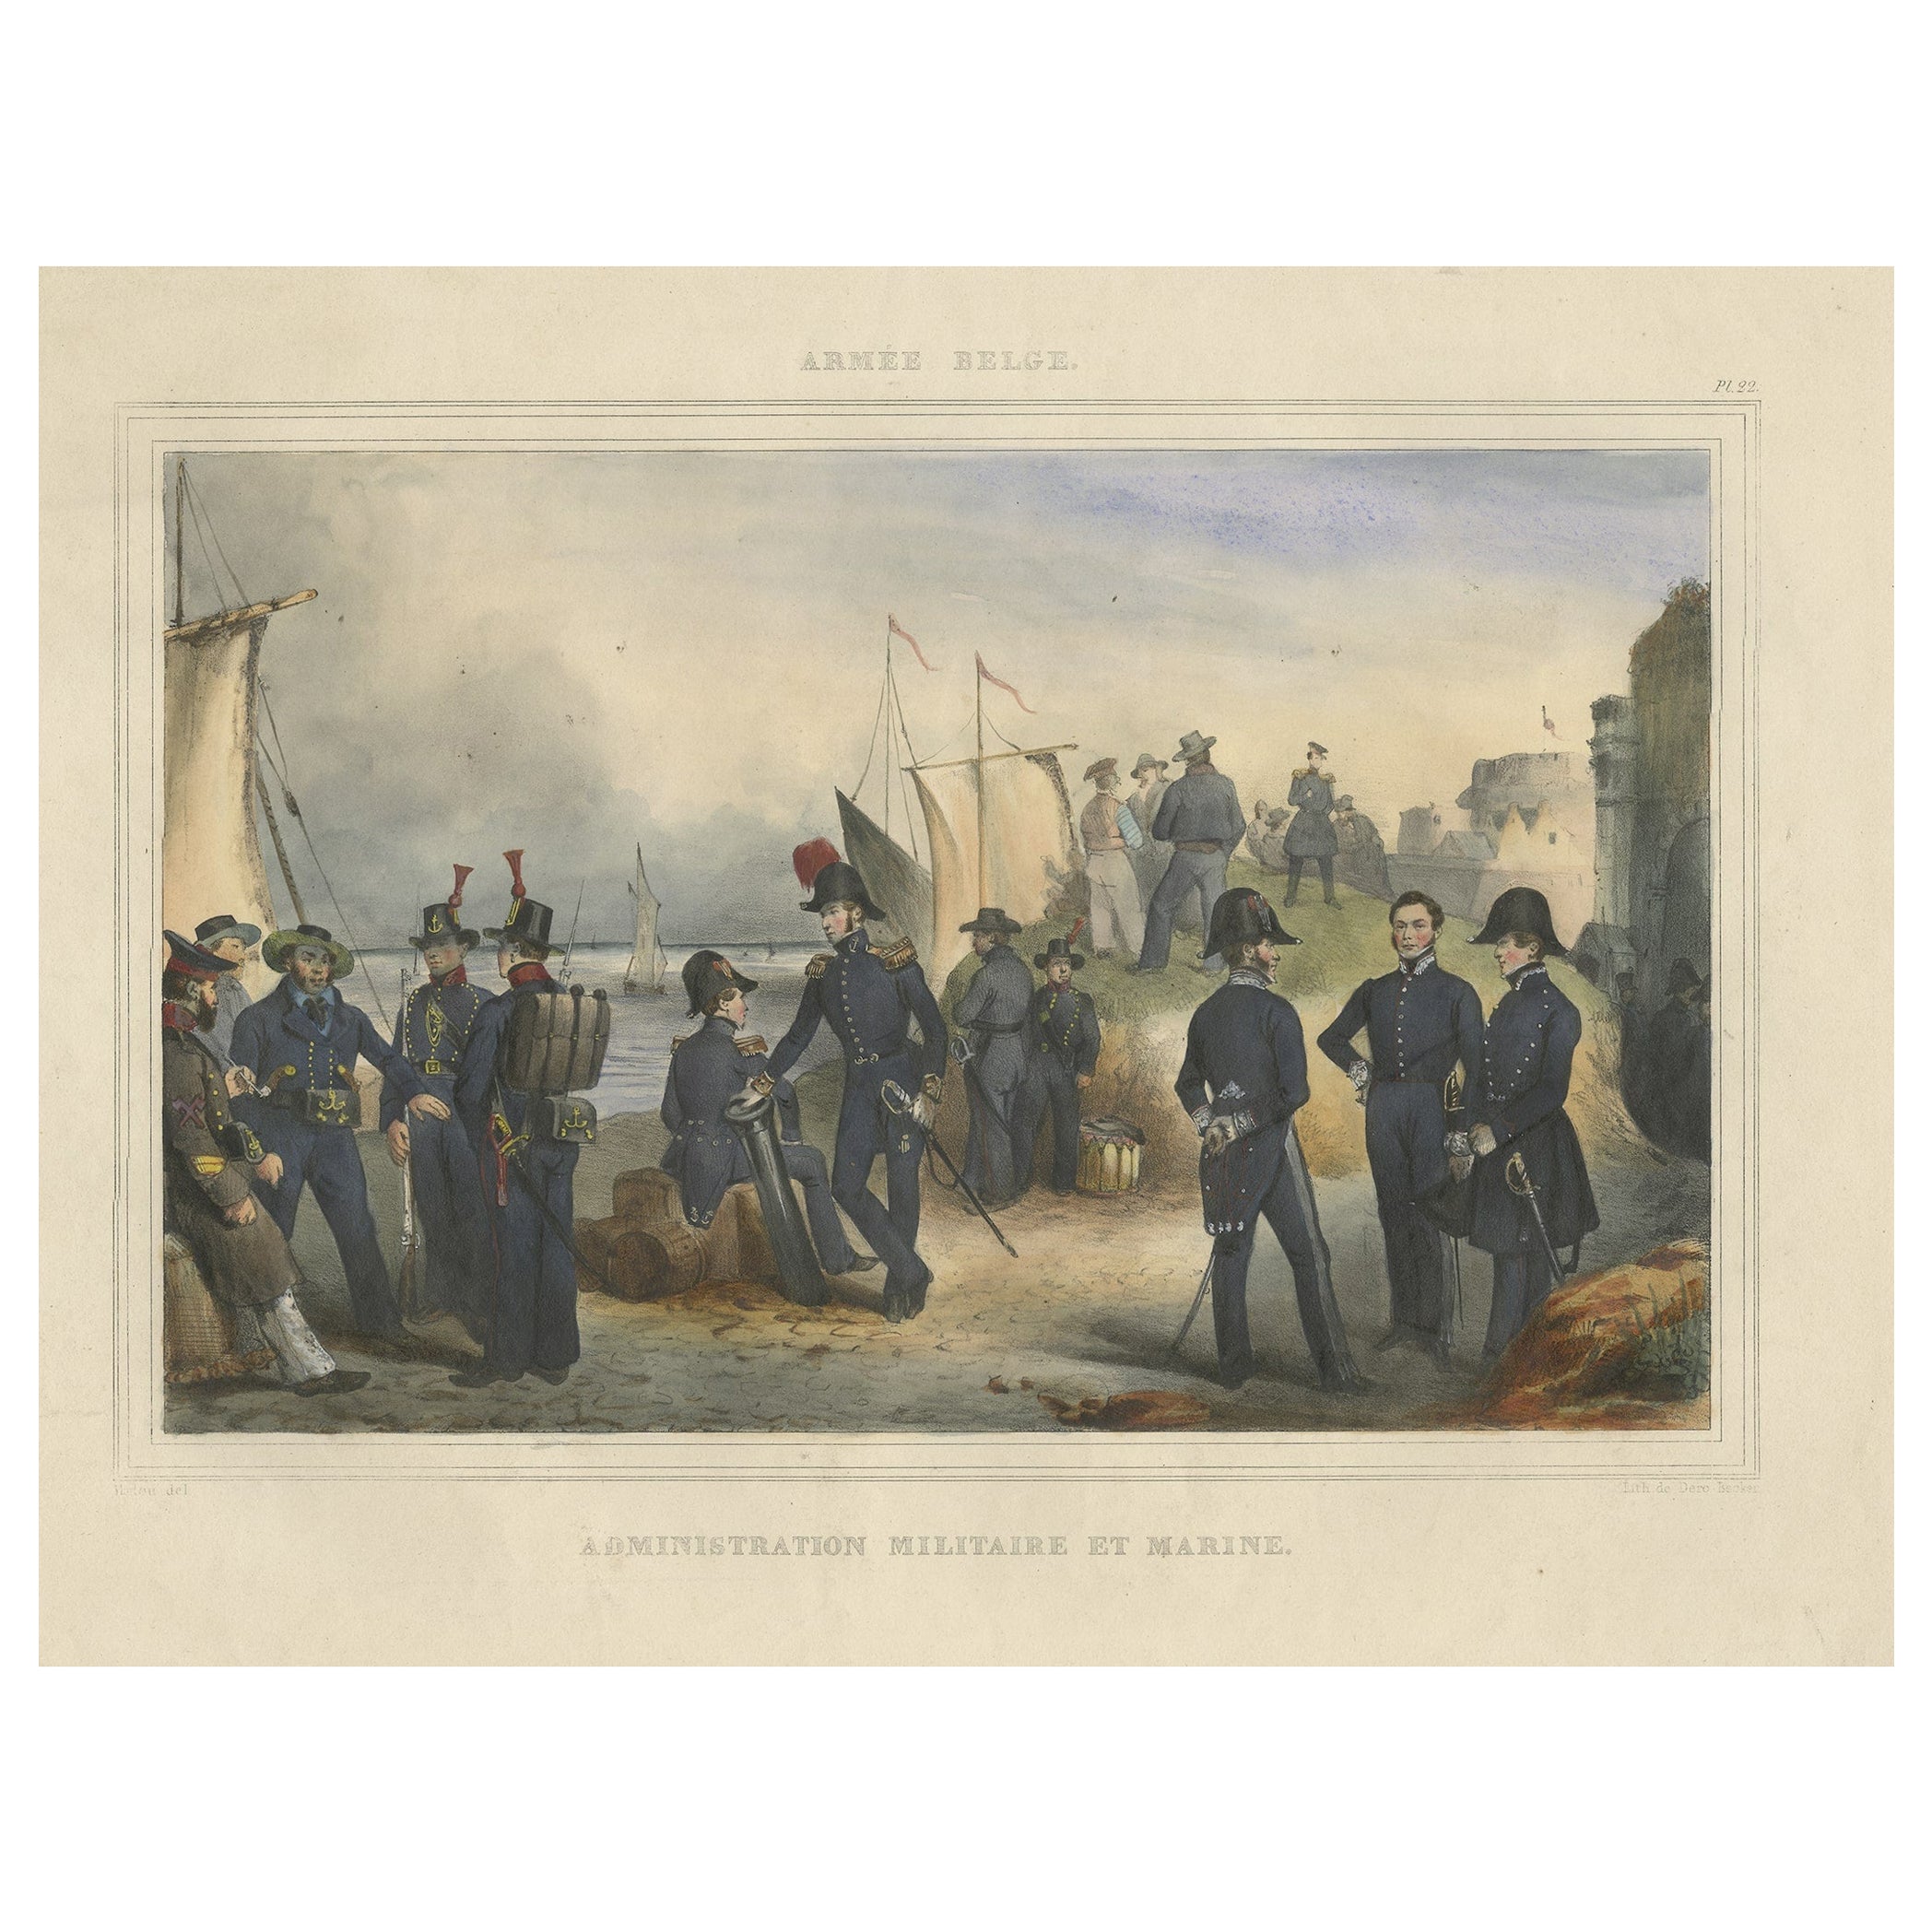 Handkolorierter antiker Druck der Marineabteilung der belgischen Armee, 1833